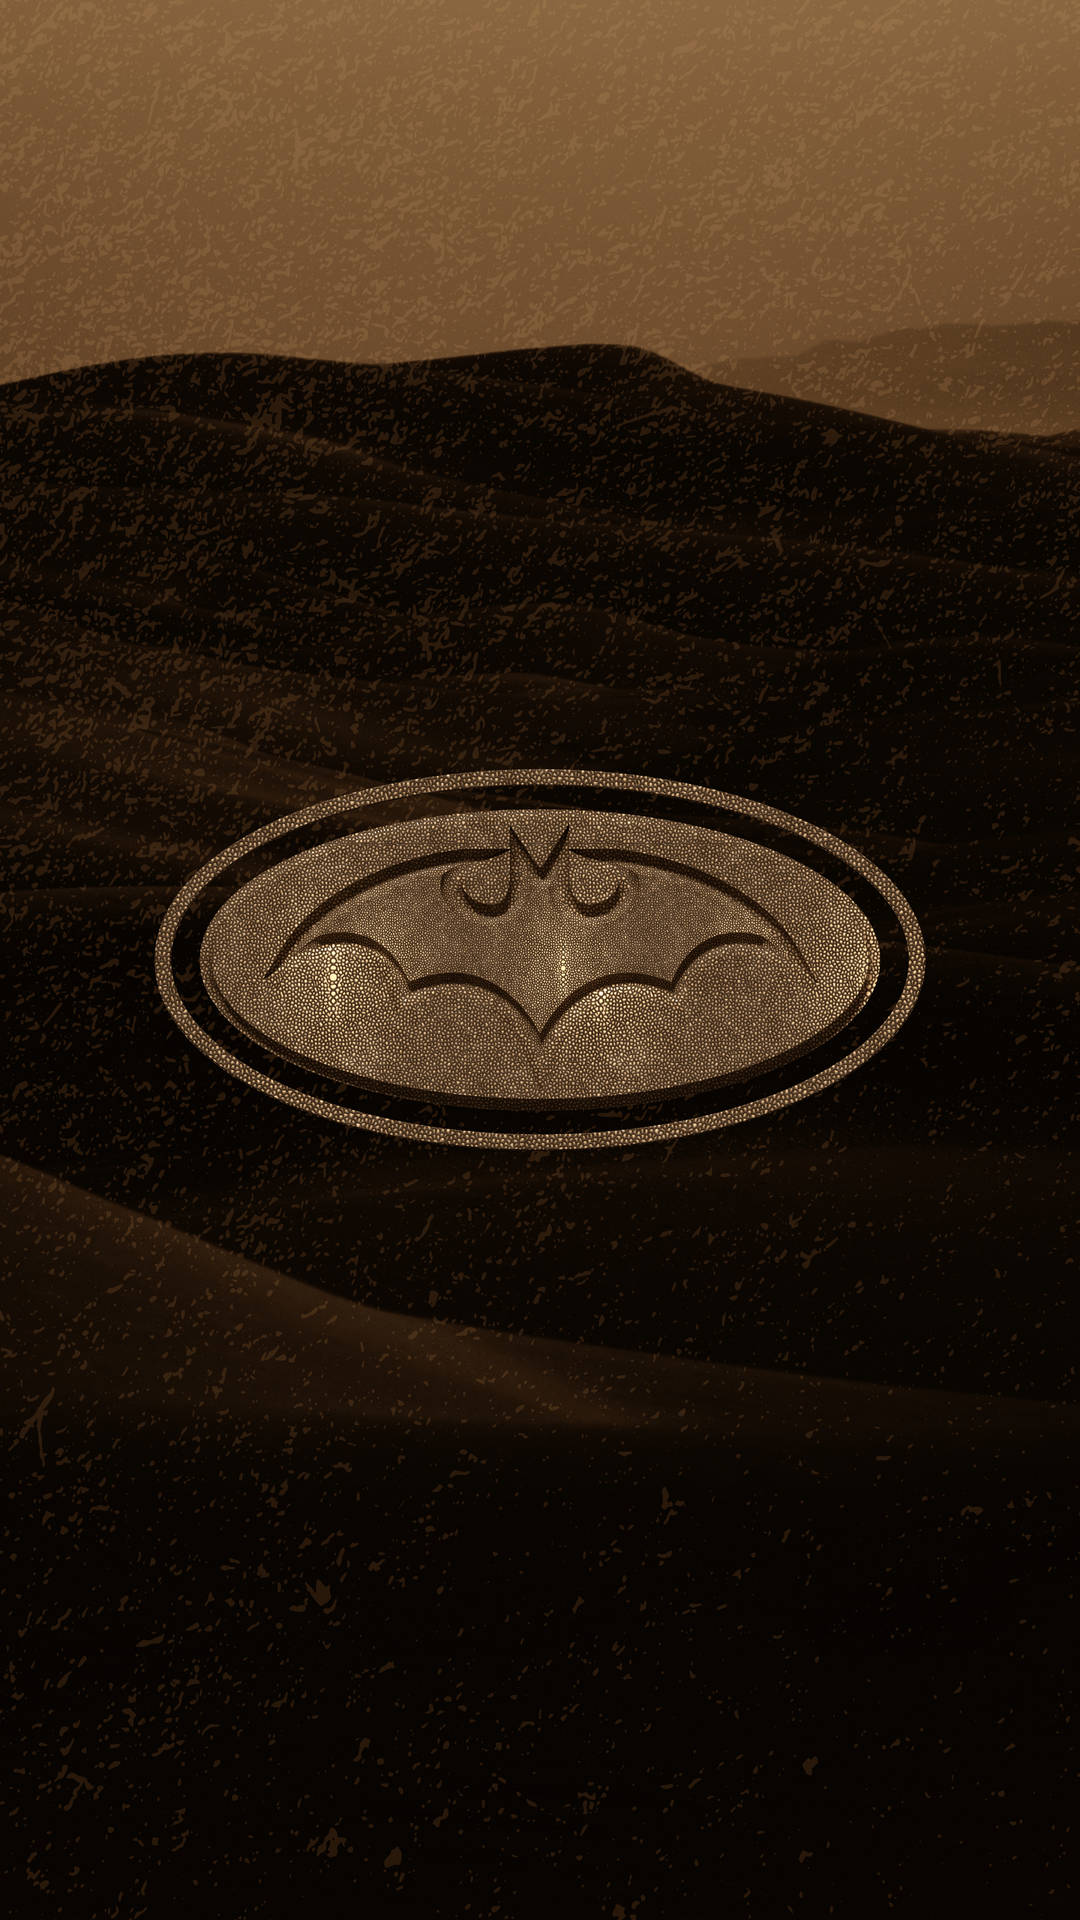 Emblemado Logotipo Do Batman De Gotham Em 4k. Papel de Parede